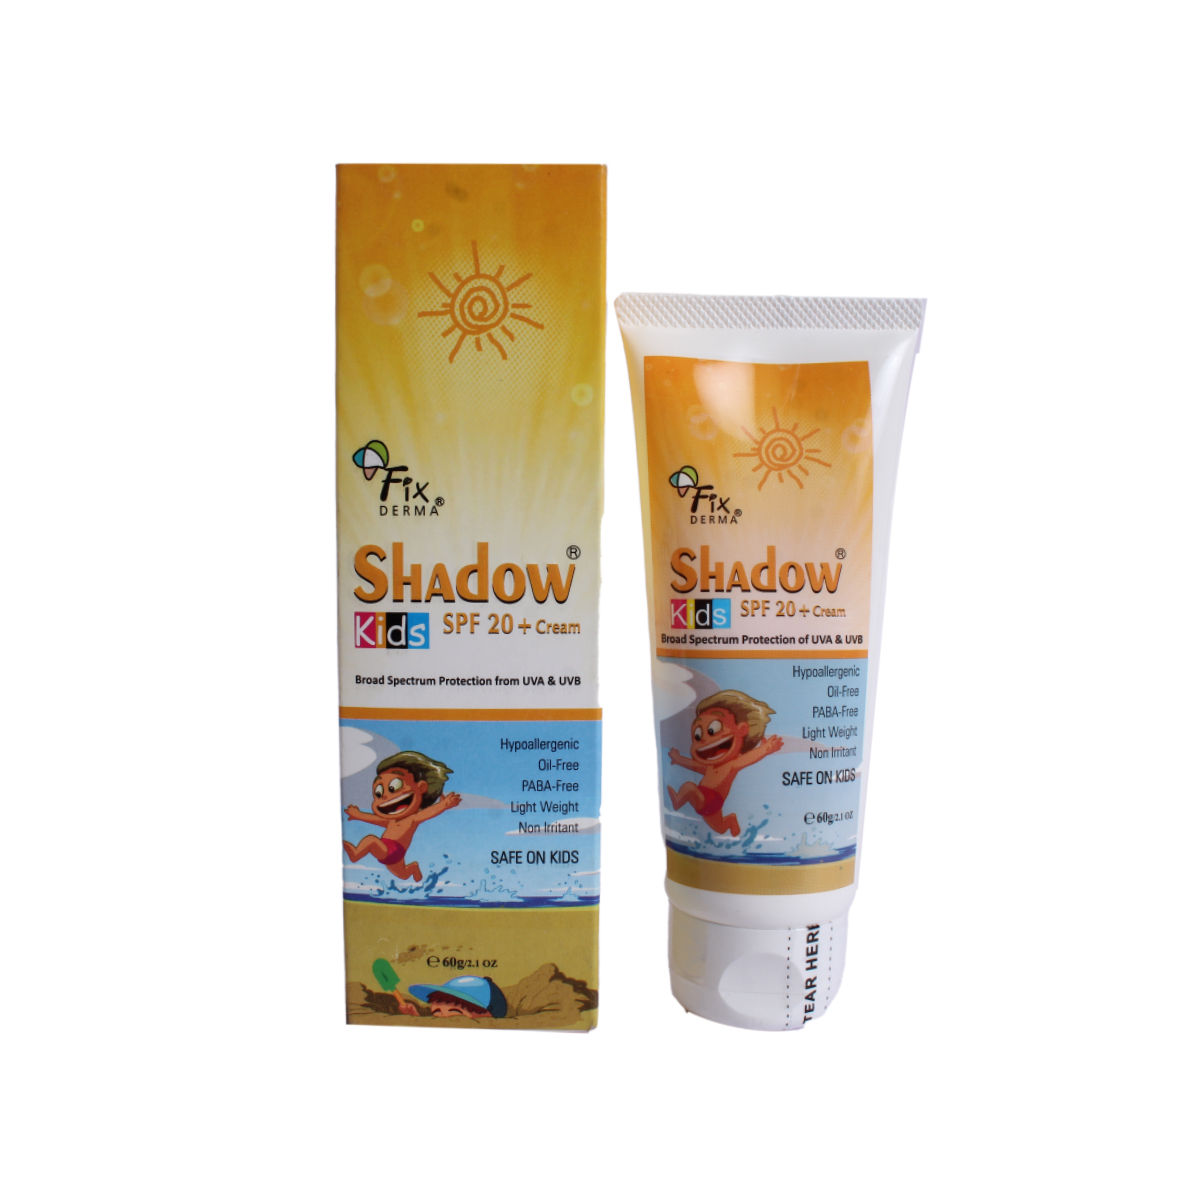 Fix Derma Shadow Kids Spf 20+ Cream 60gm, Pack of 1 